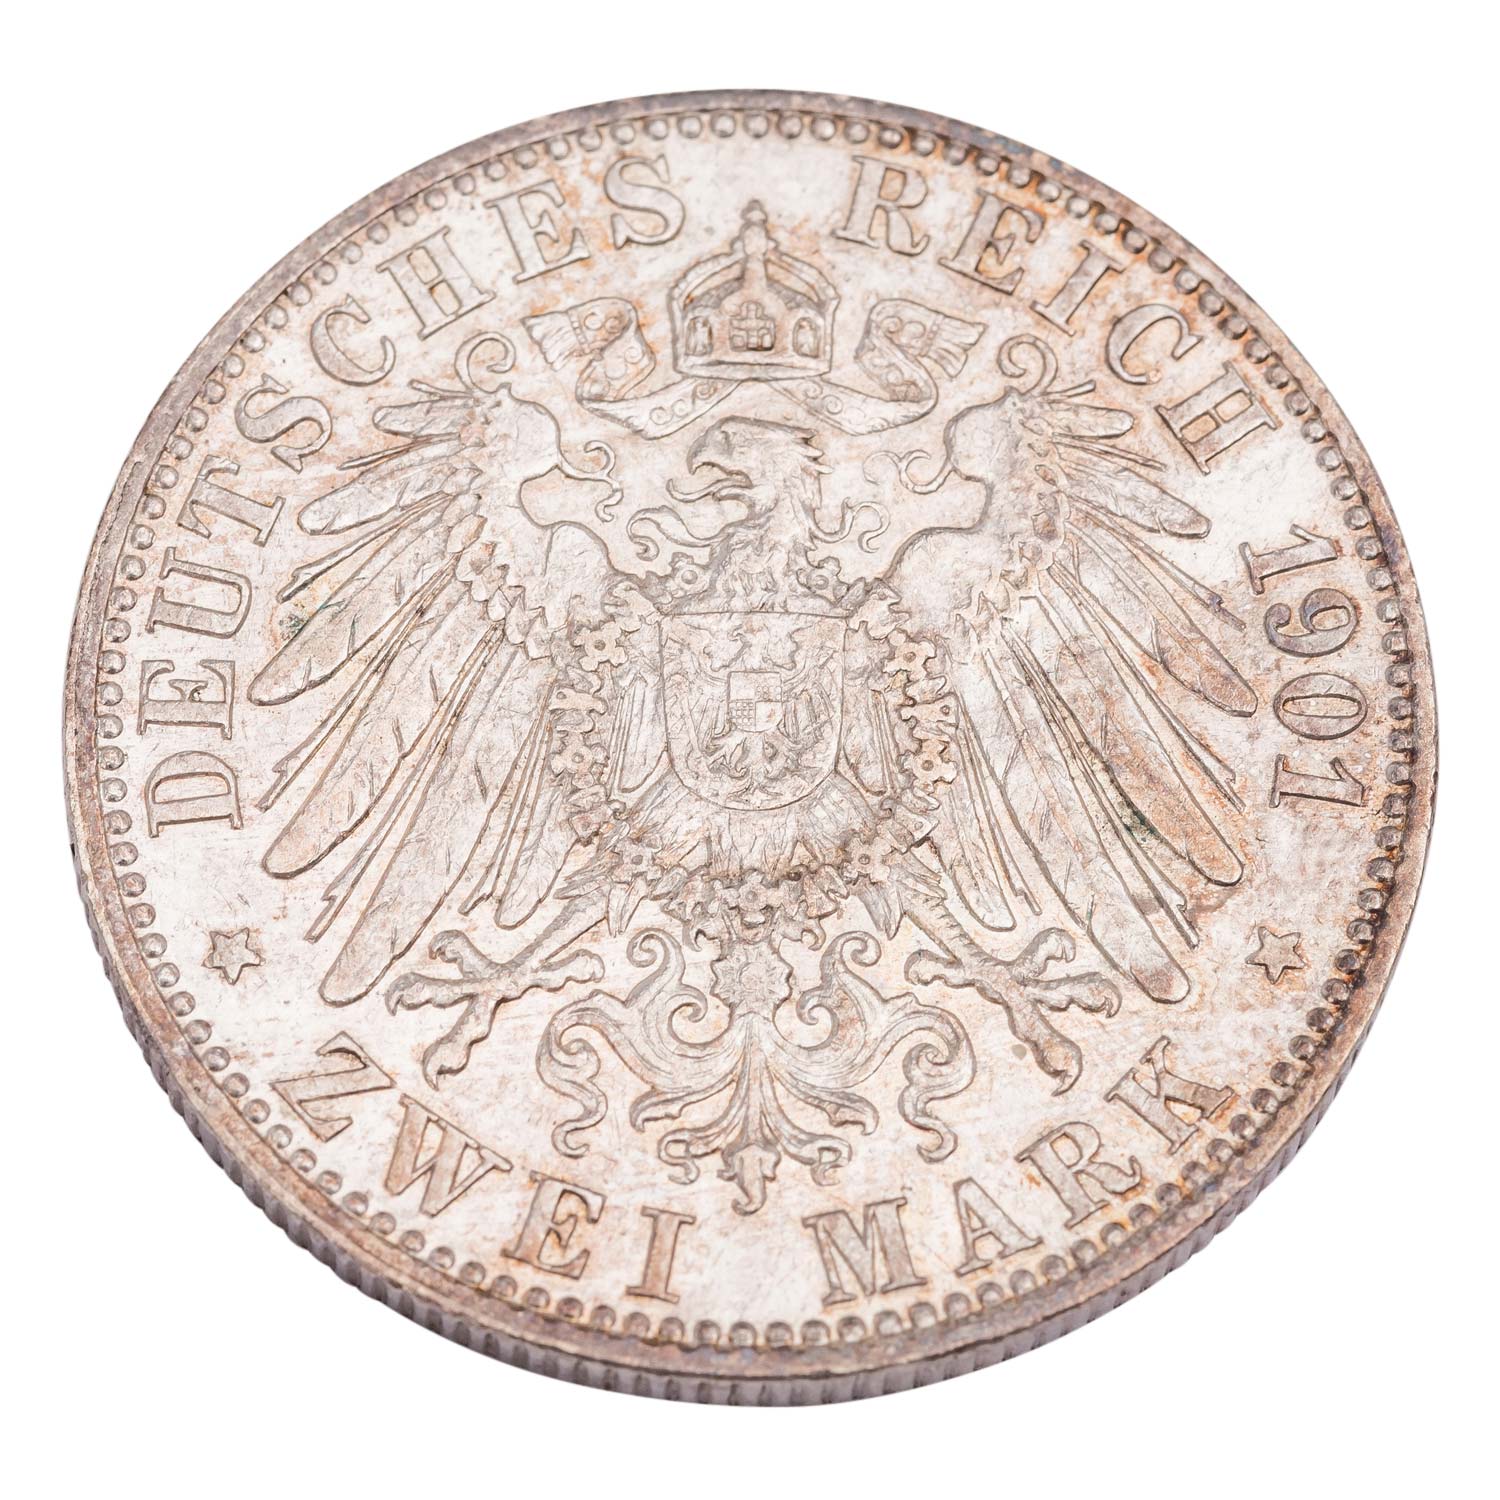 Deutsches Kaiserreich / Mecklenburg Schwerin - 2 Mark 1901, - Image 2 of 3